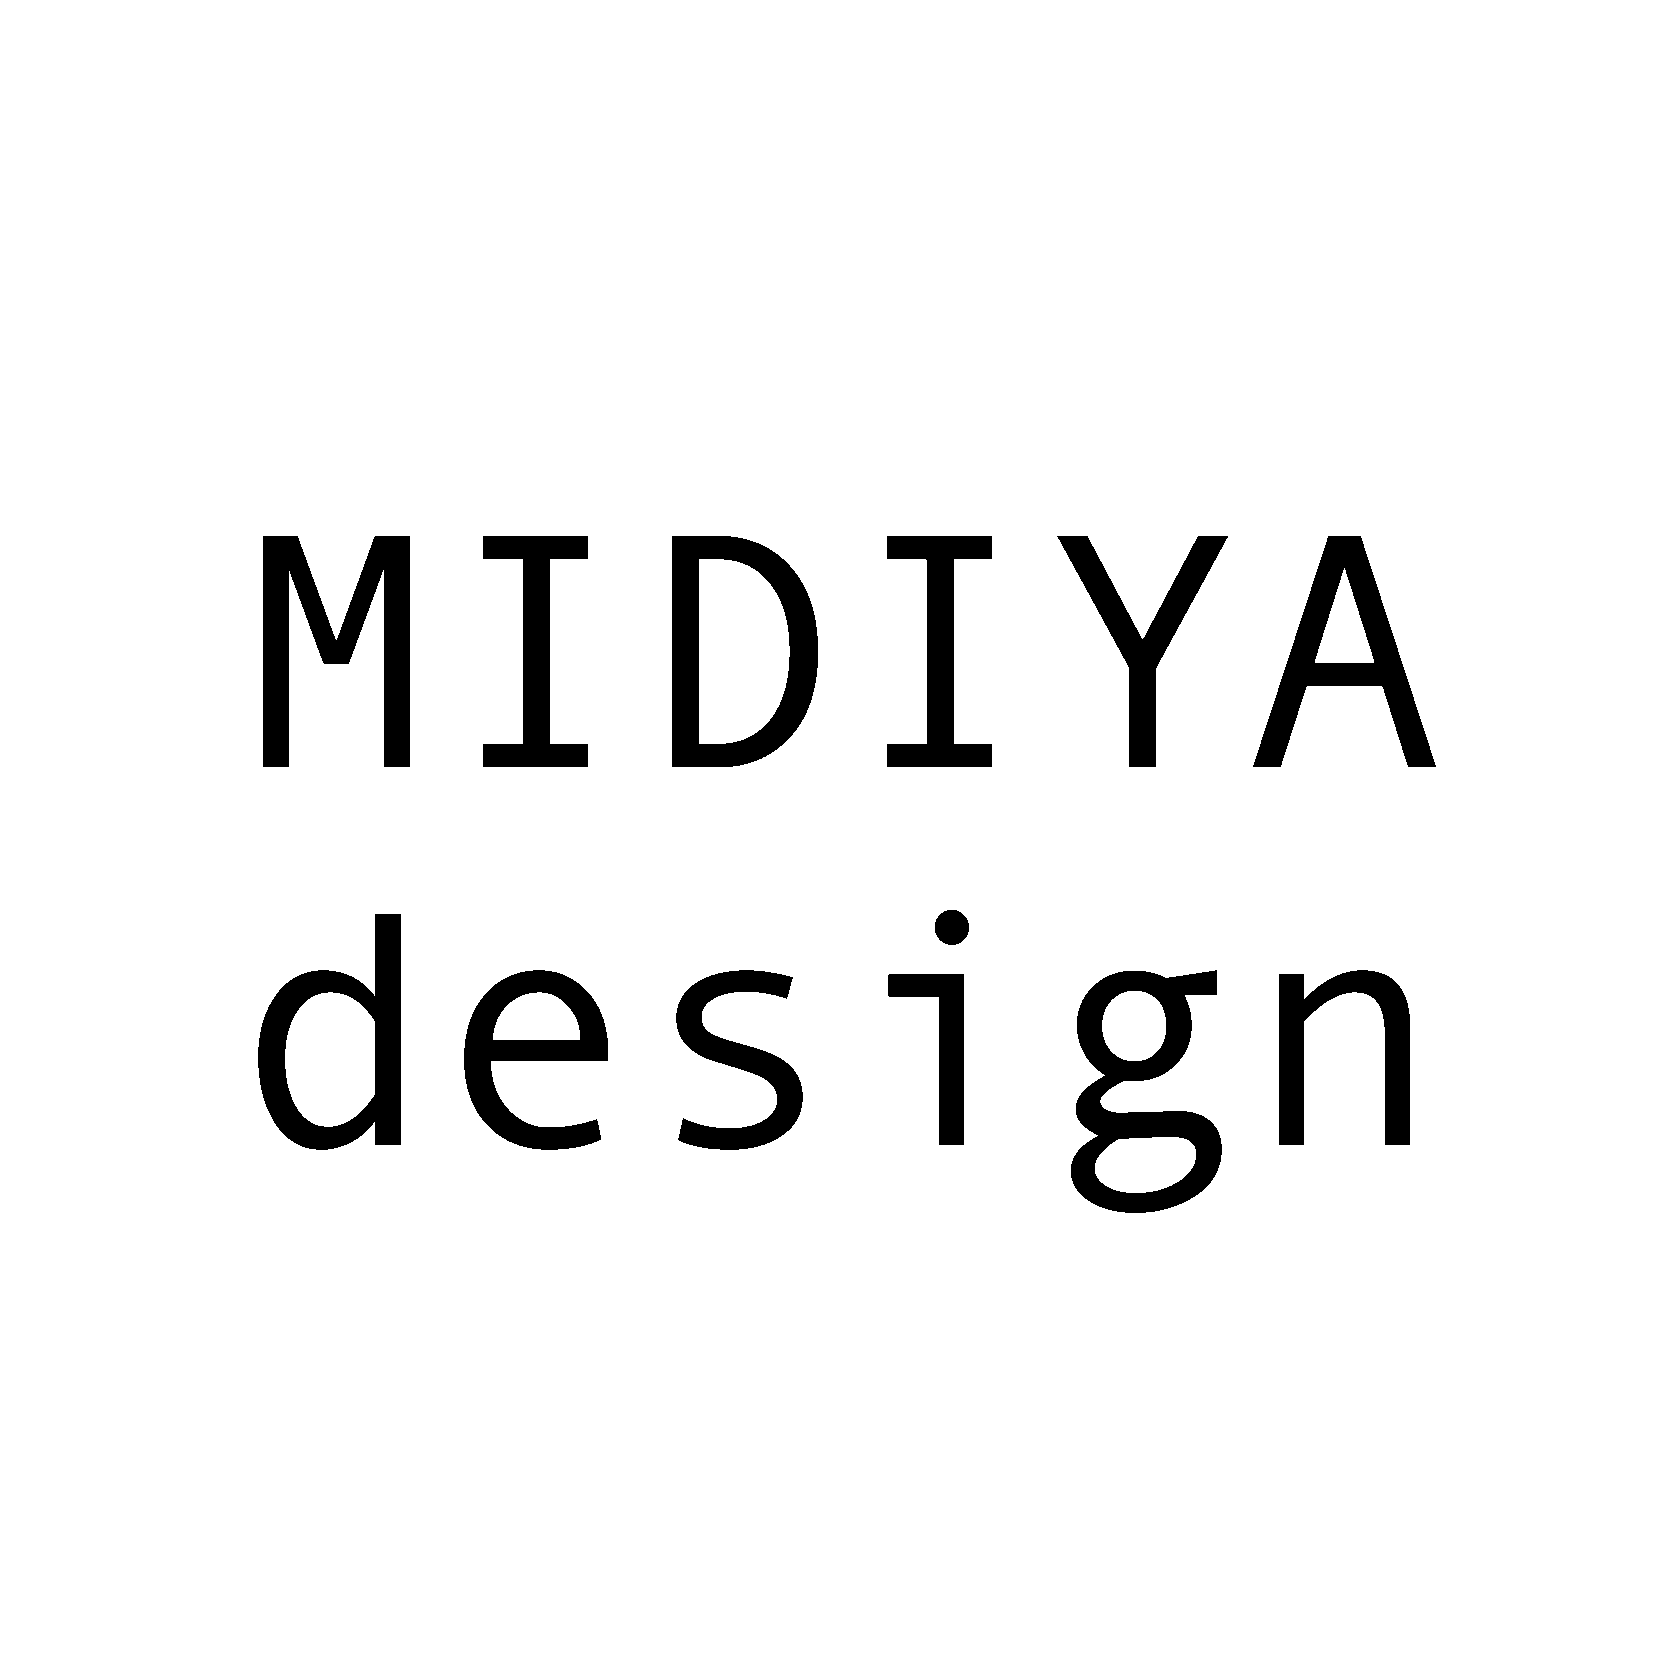 MIDIYA DESIGN